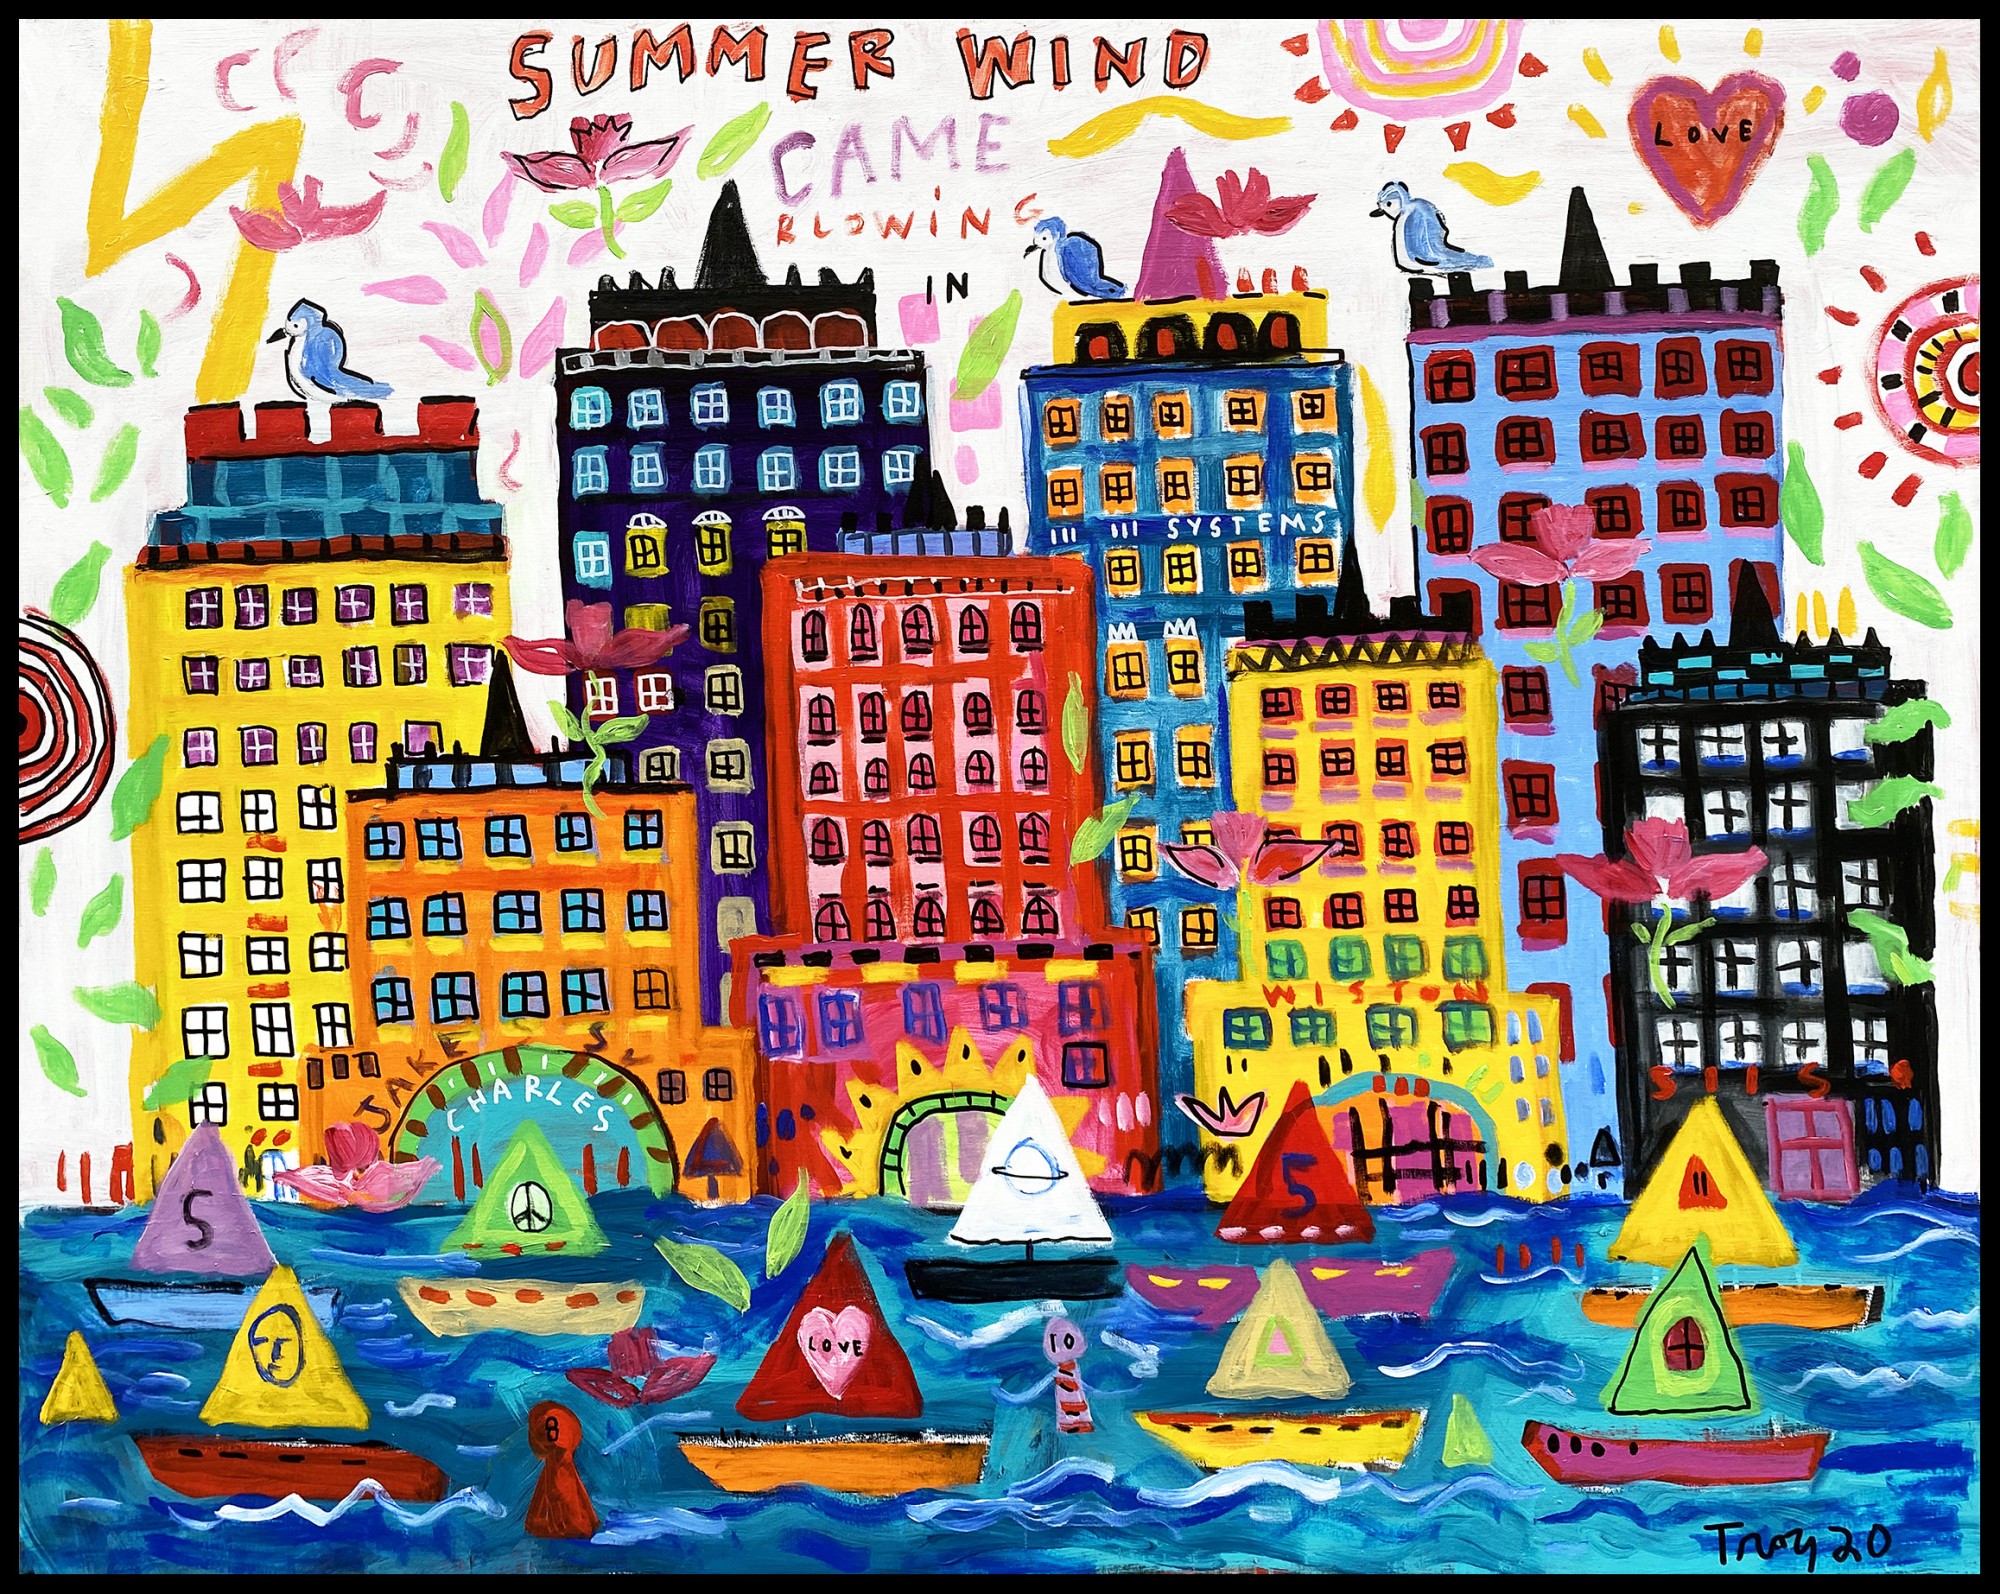 Troy Henriksen - Summer wind